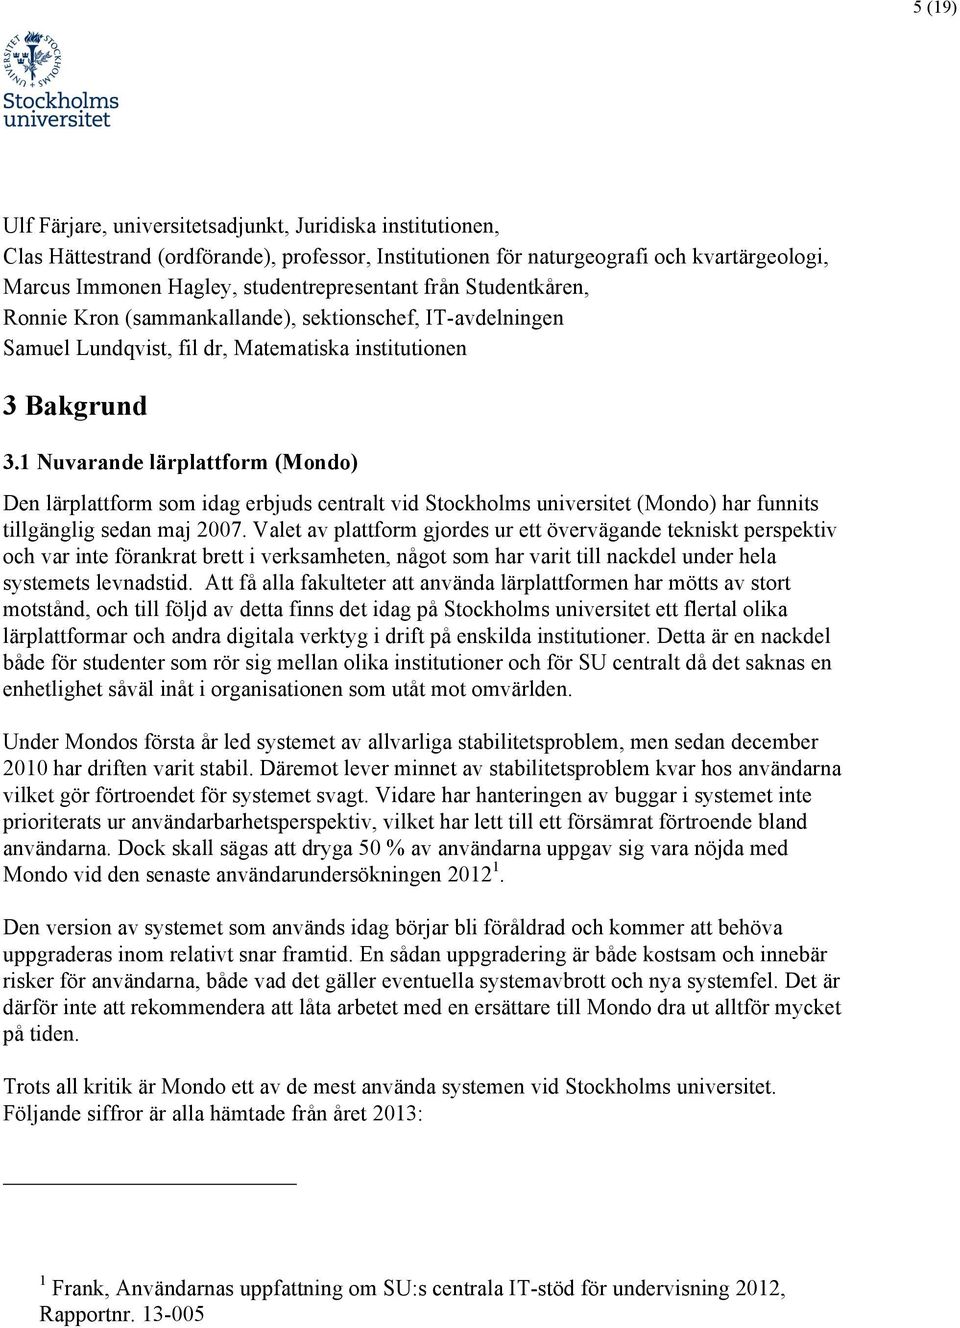 1 Nuvarande lärplattform (Mondo) Den lärplattform som idag erbjuds centralt vid Stockholms universitet (Mondo) har funnits tillgänglig sedan maj 2007.